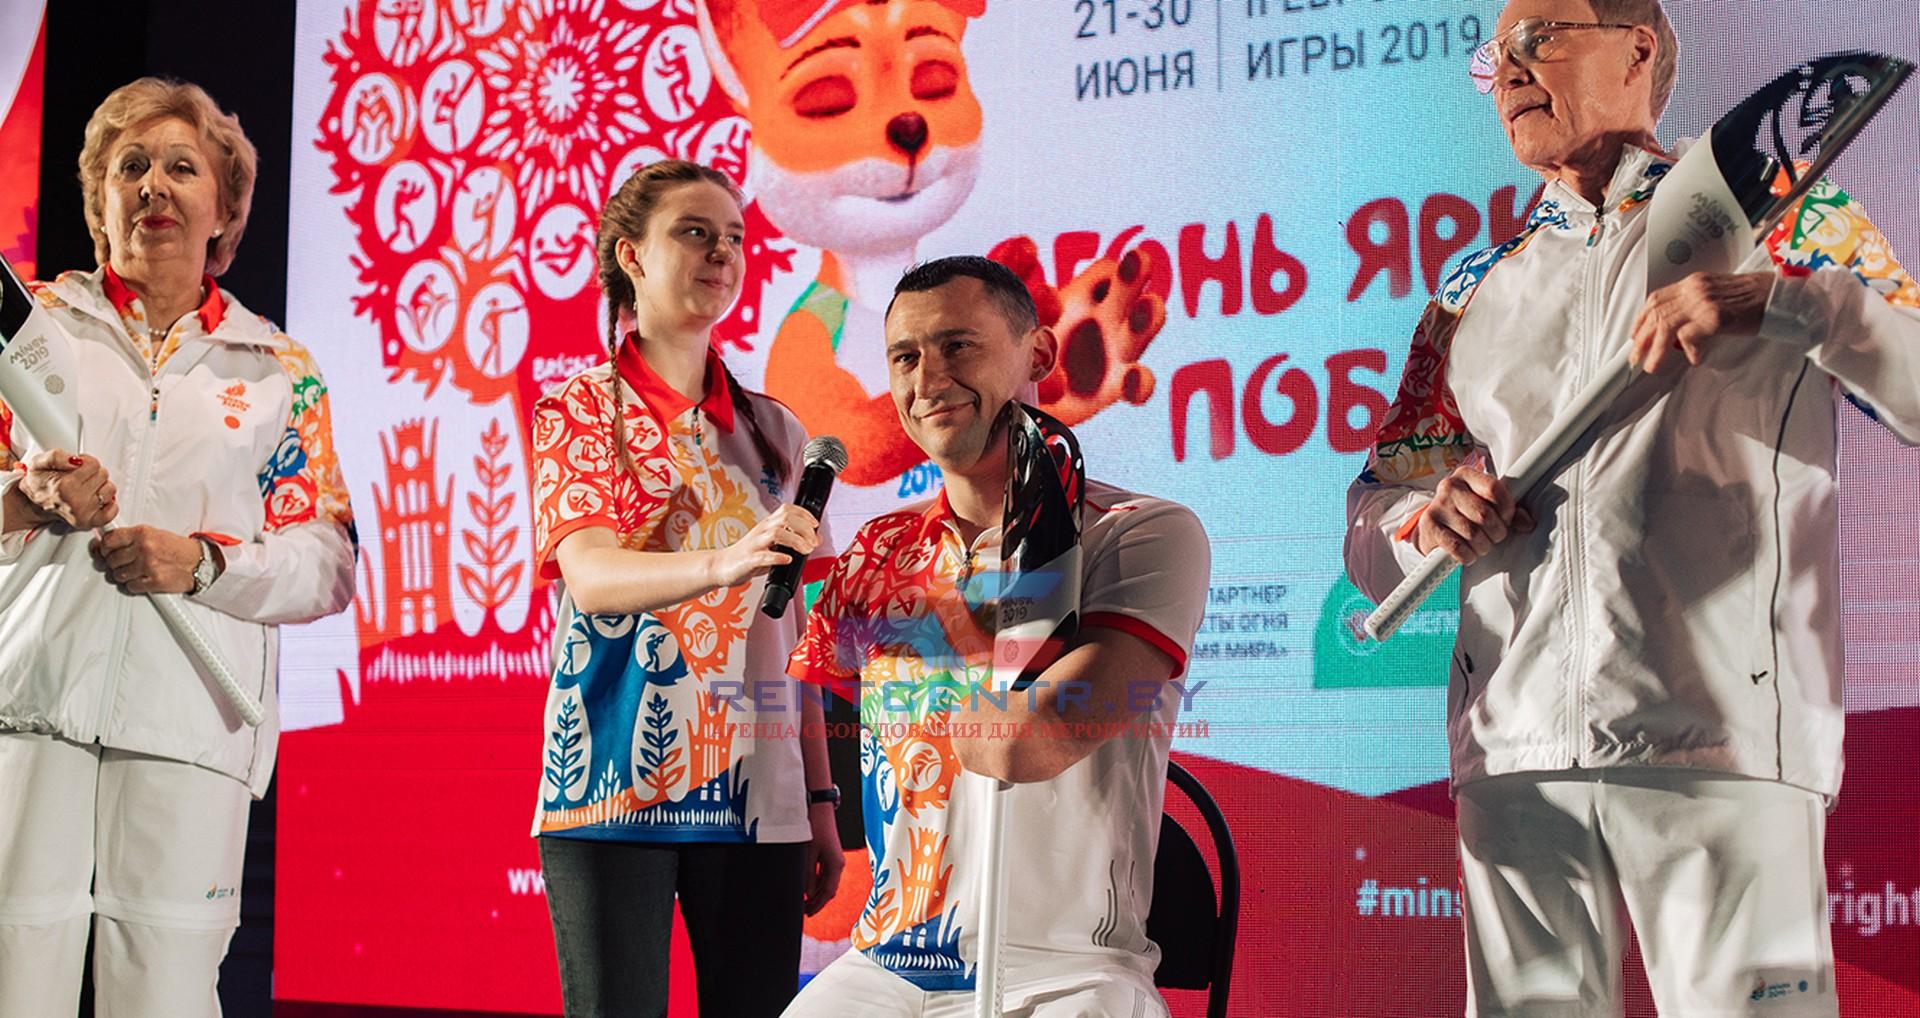 Презентация эстафеты Пламя мира II Европейских игр состоялась в Минске 2019